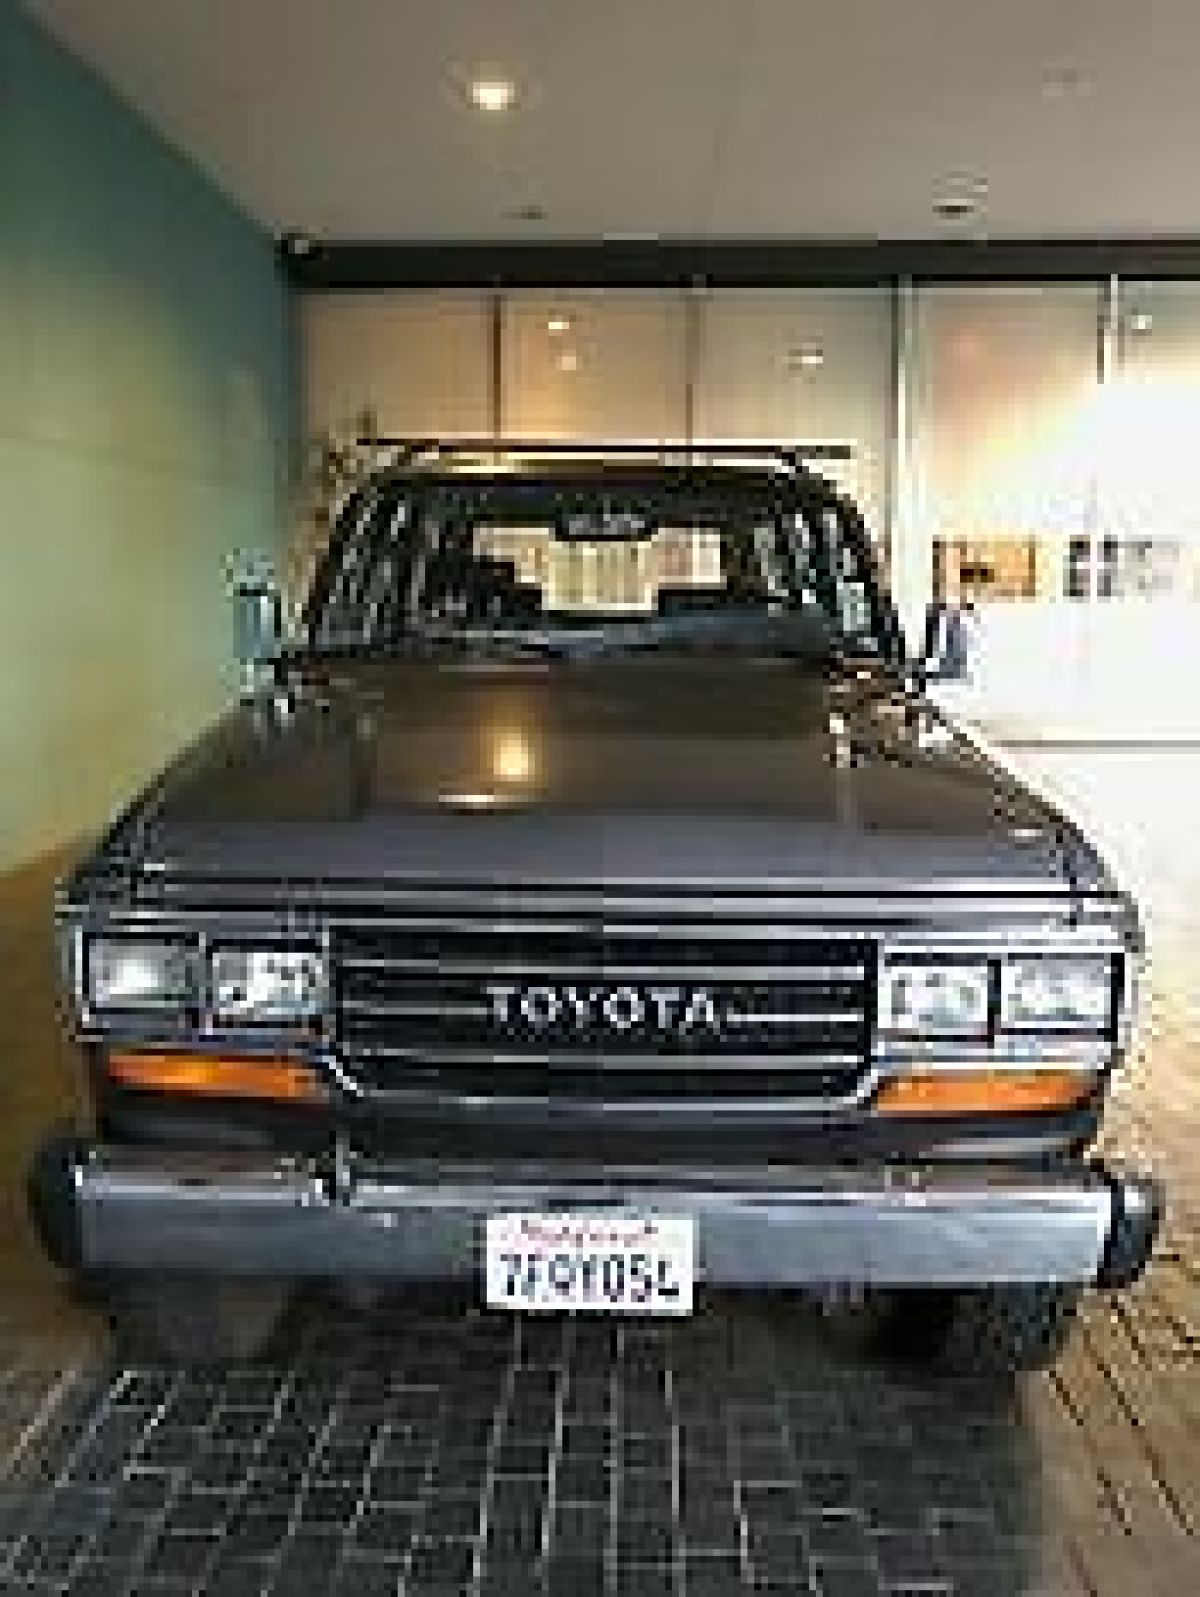 1989 Toyota suv